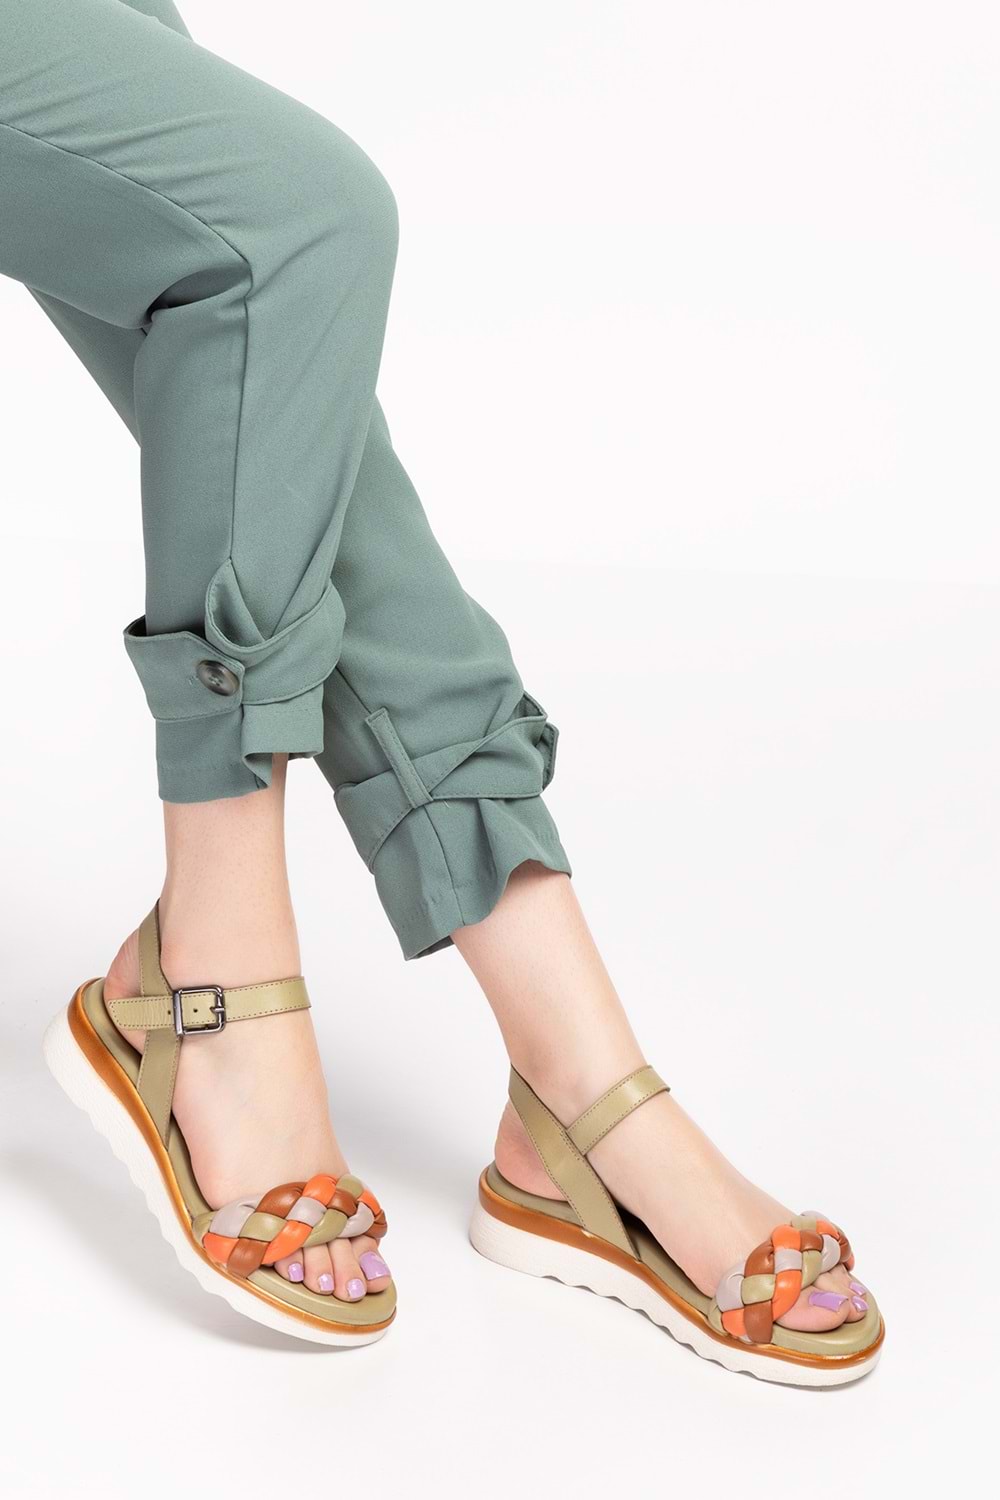 Gondol Hakiki Deri Renkli Kombin Günlük Şık Sandalet iz.4510 - Yeşil Kombin - 38